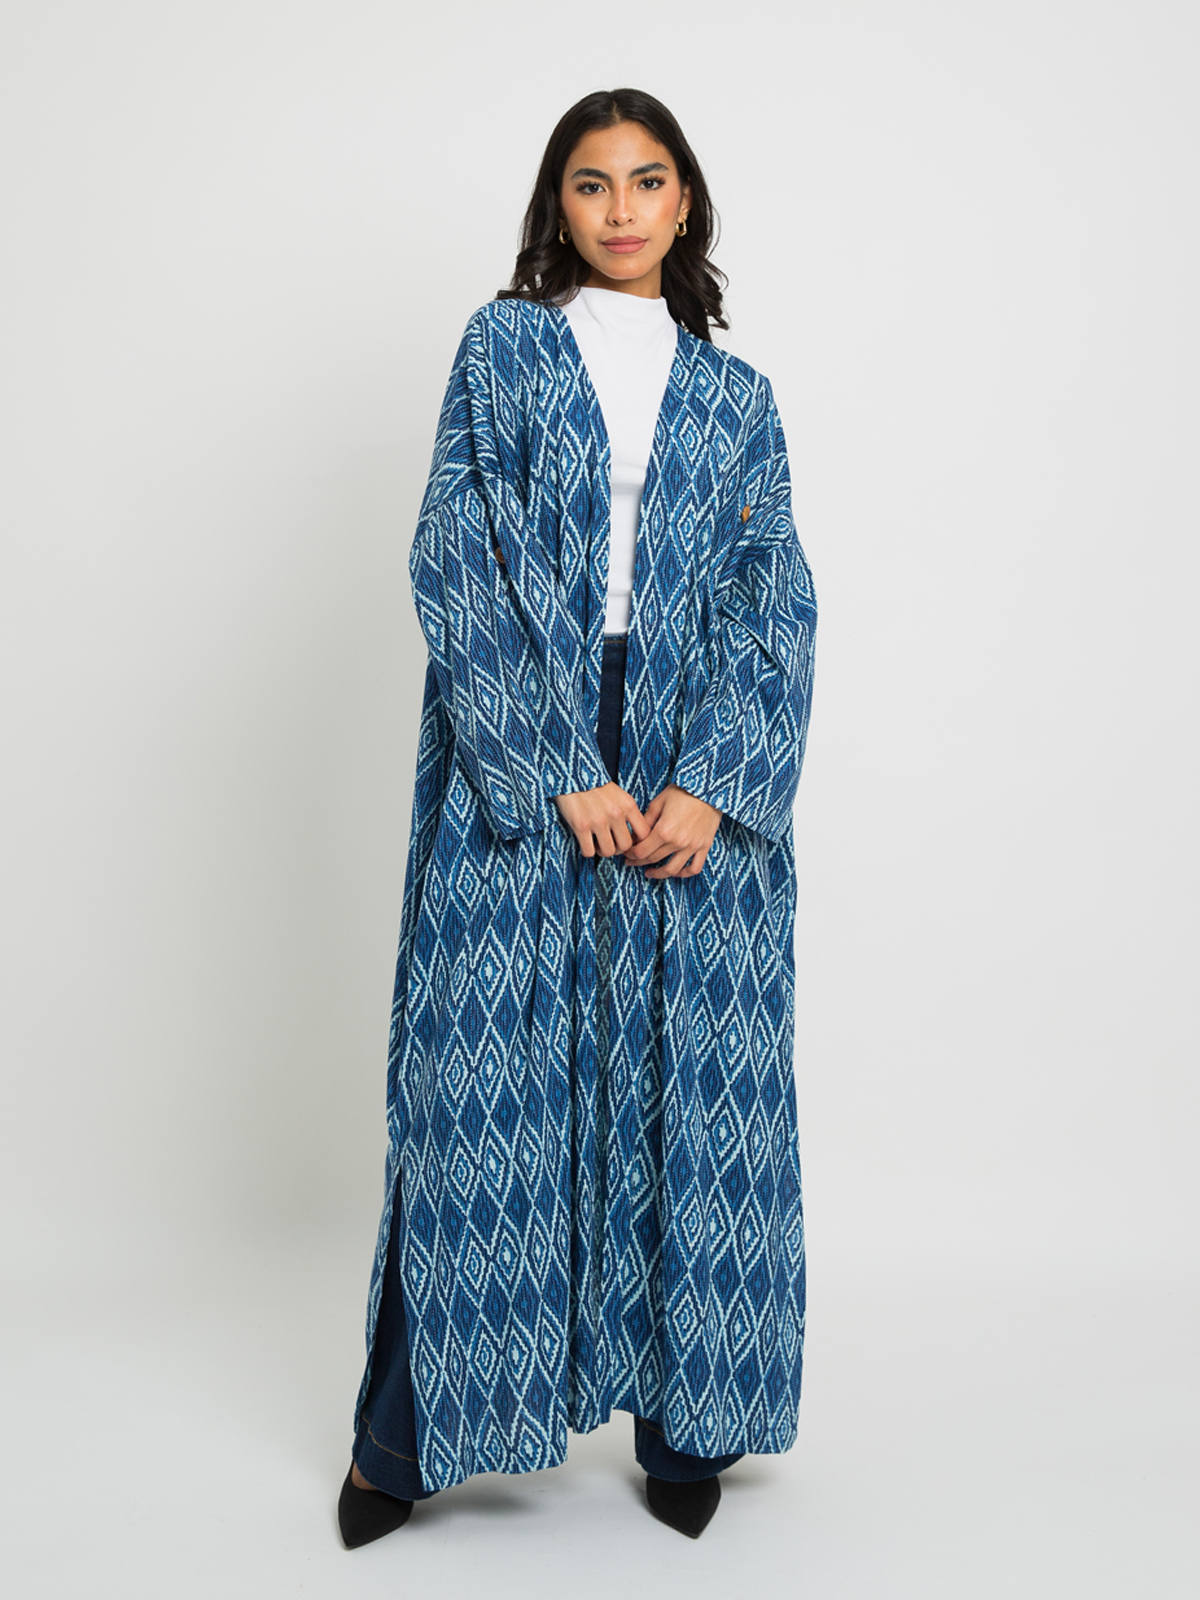 Capri - Bohemian Long Open Abaya in Natural Cotton Fabric